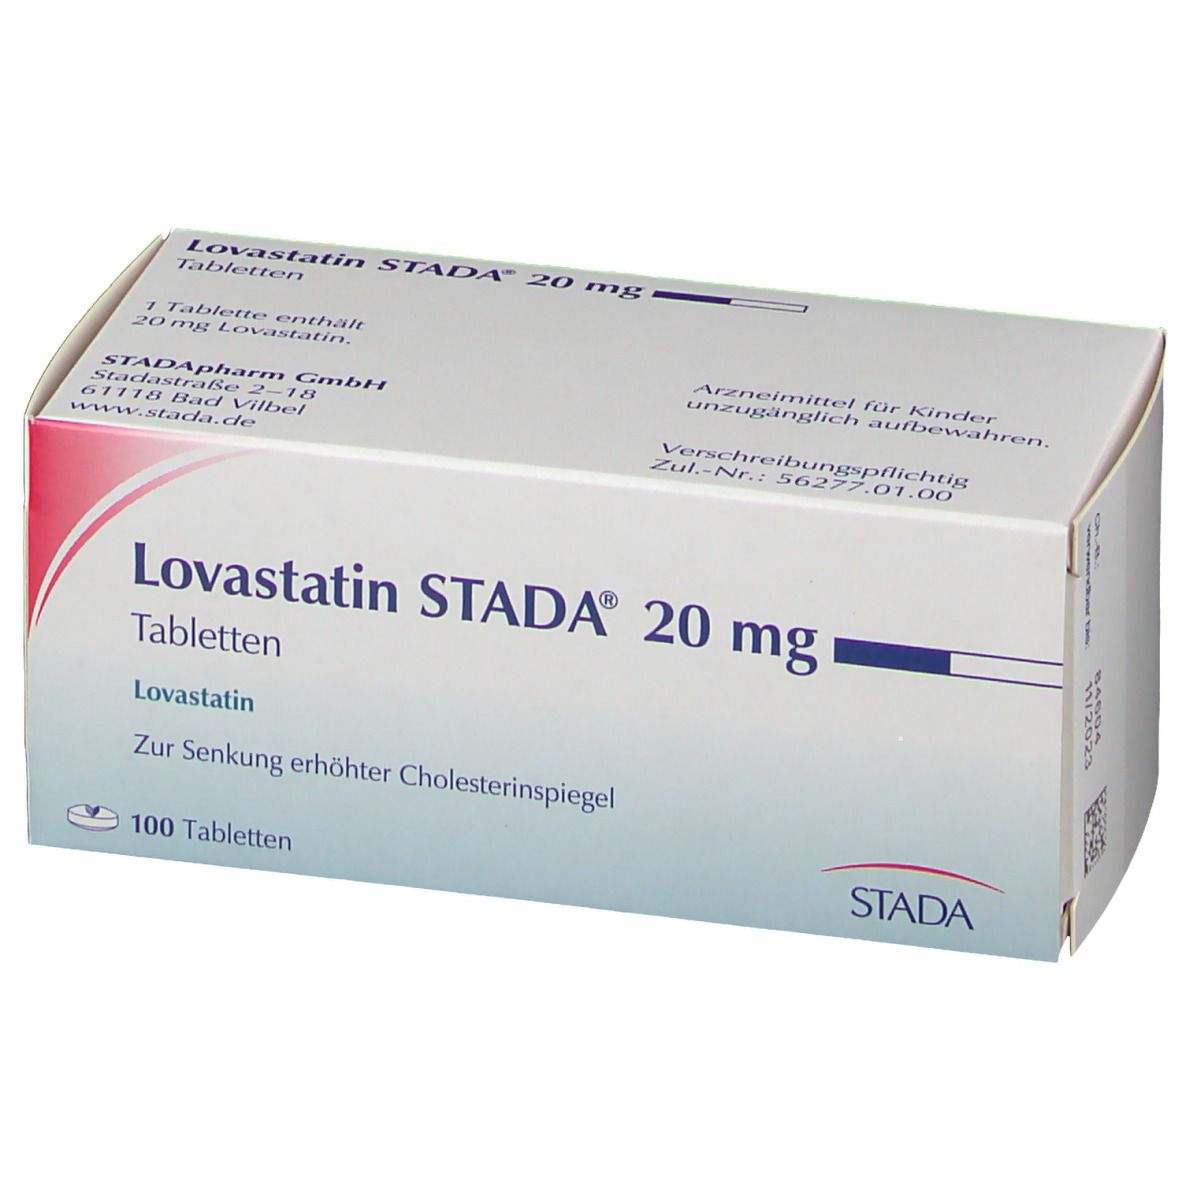 Lovastatin STADA® 20 mg